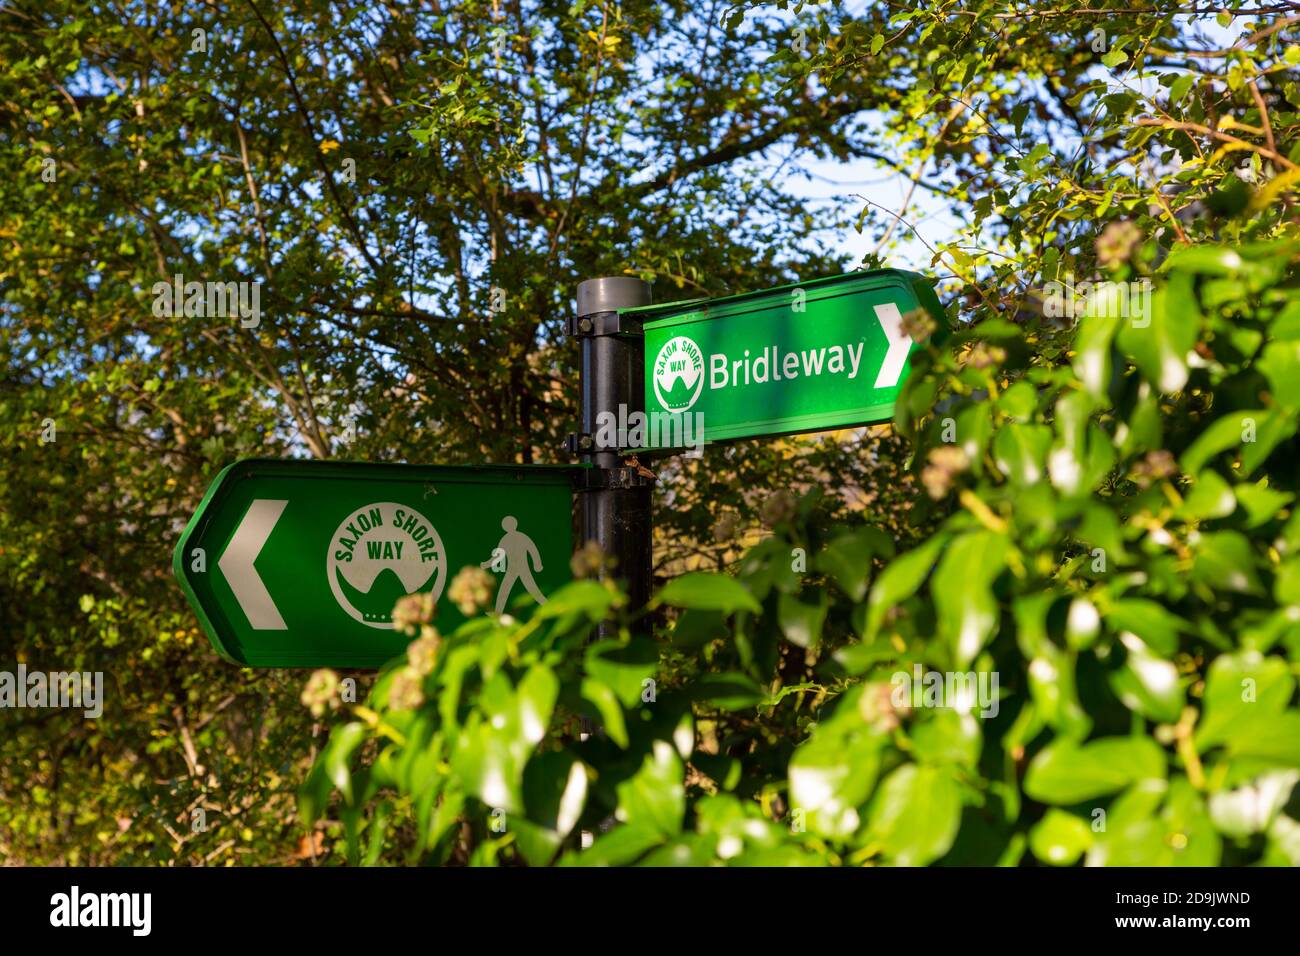 Saxon shore way and bridleway fingerpost signs, hamstreet, ashford, kent, uk Stock Photo